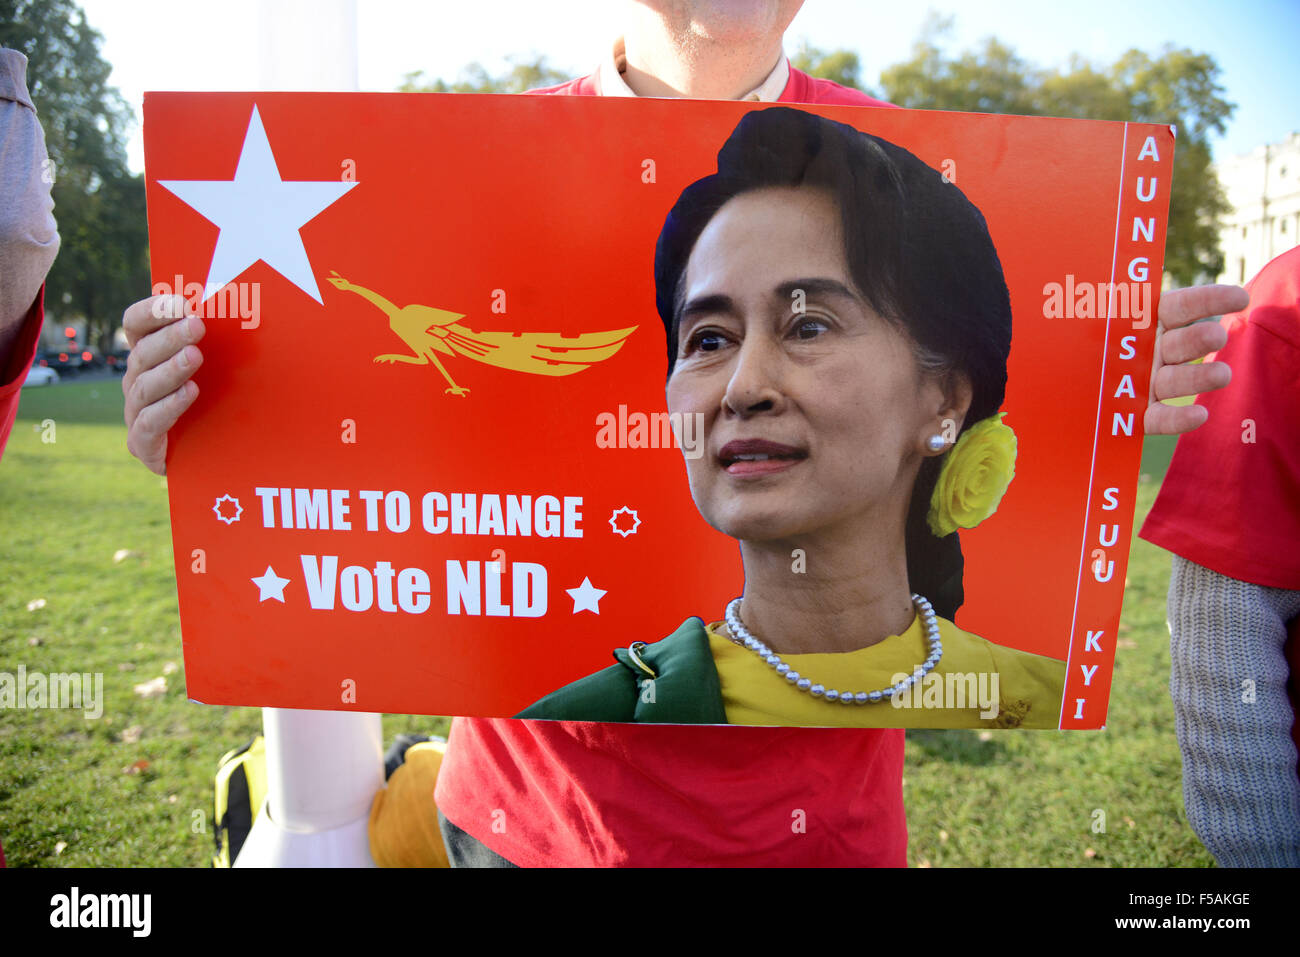 Ligue nationale pour la démocratie en Birmanie à l'extérieur du parlement de campagne à Londres, Angleterre, Royaume-Uni Banque D'Images